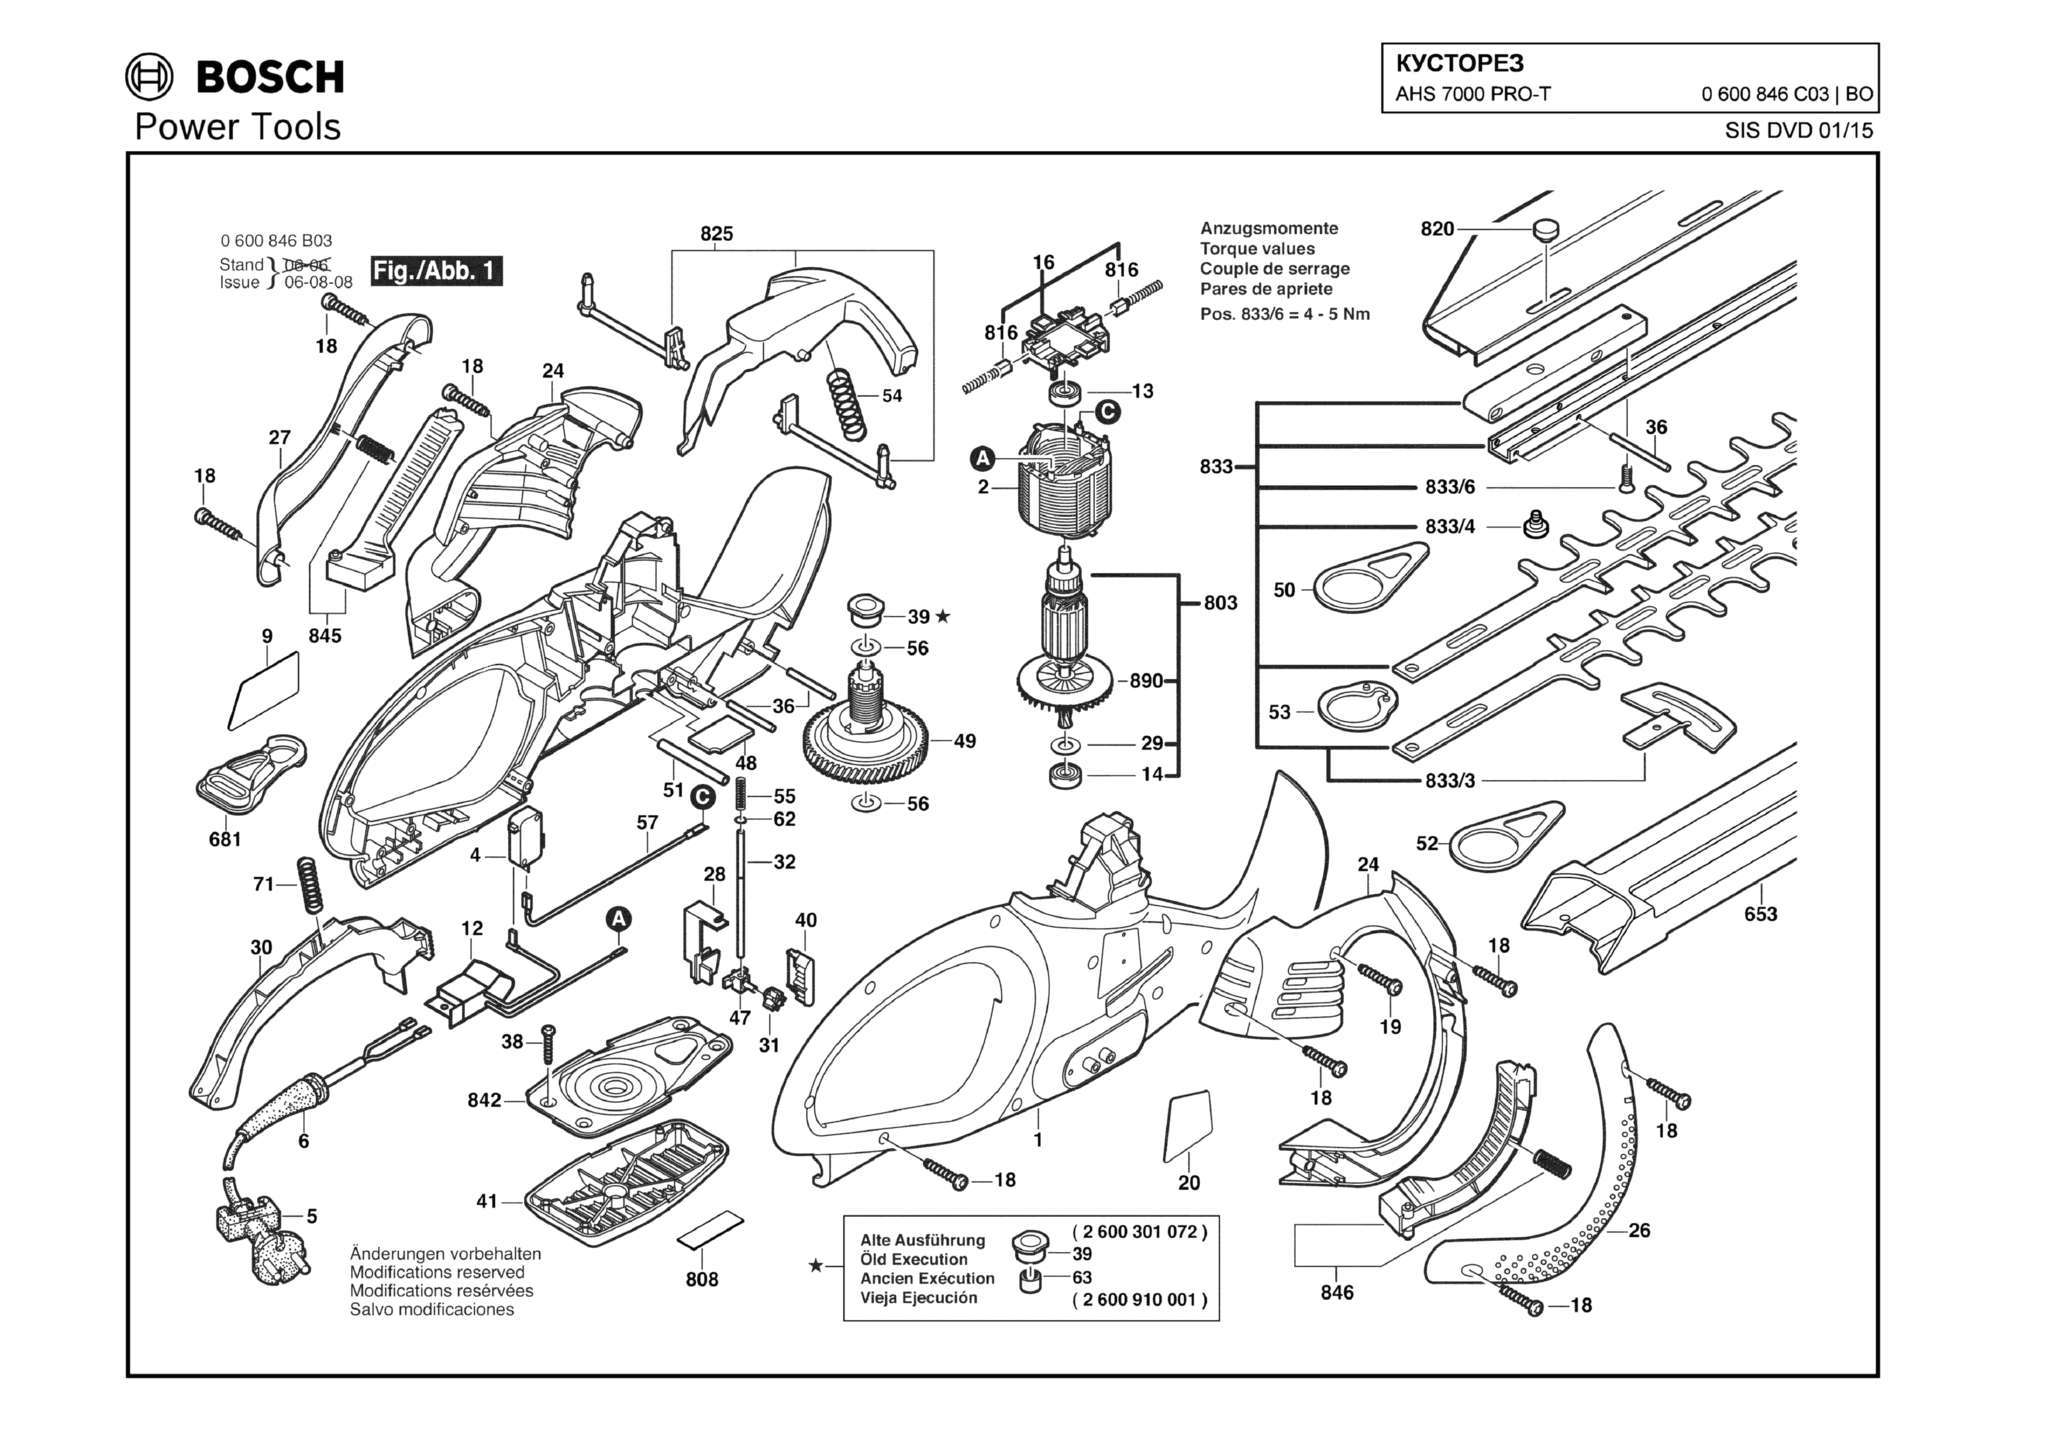 Запчасти, схема и деталировка Bosch AHS 7000 PRO-T (ТИП 0600846C03)